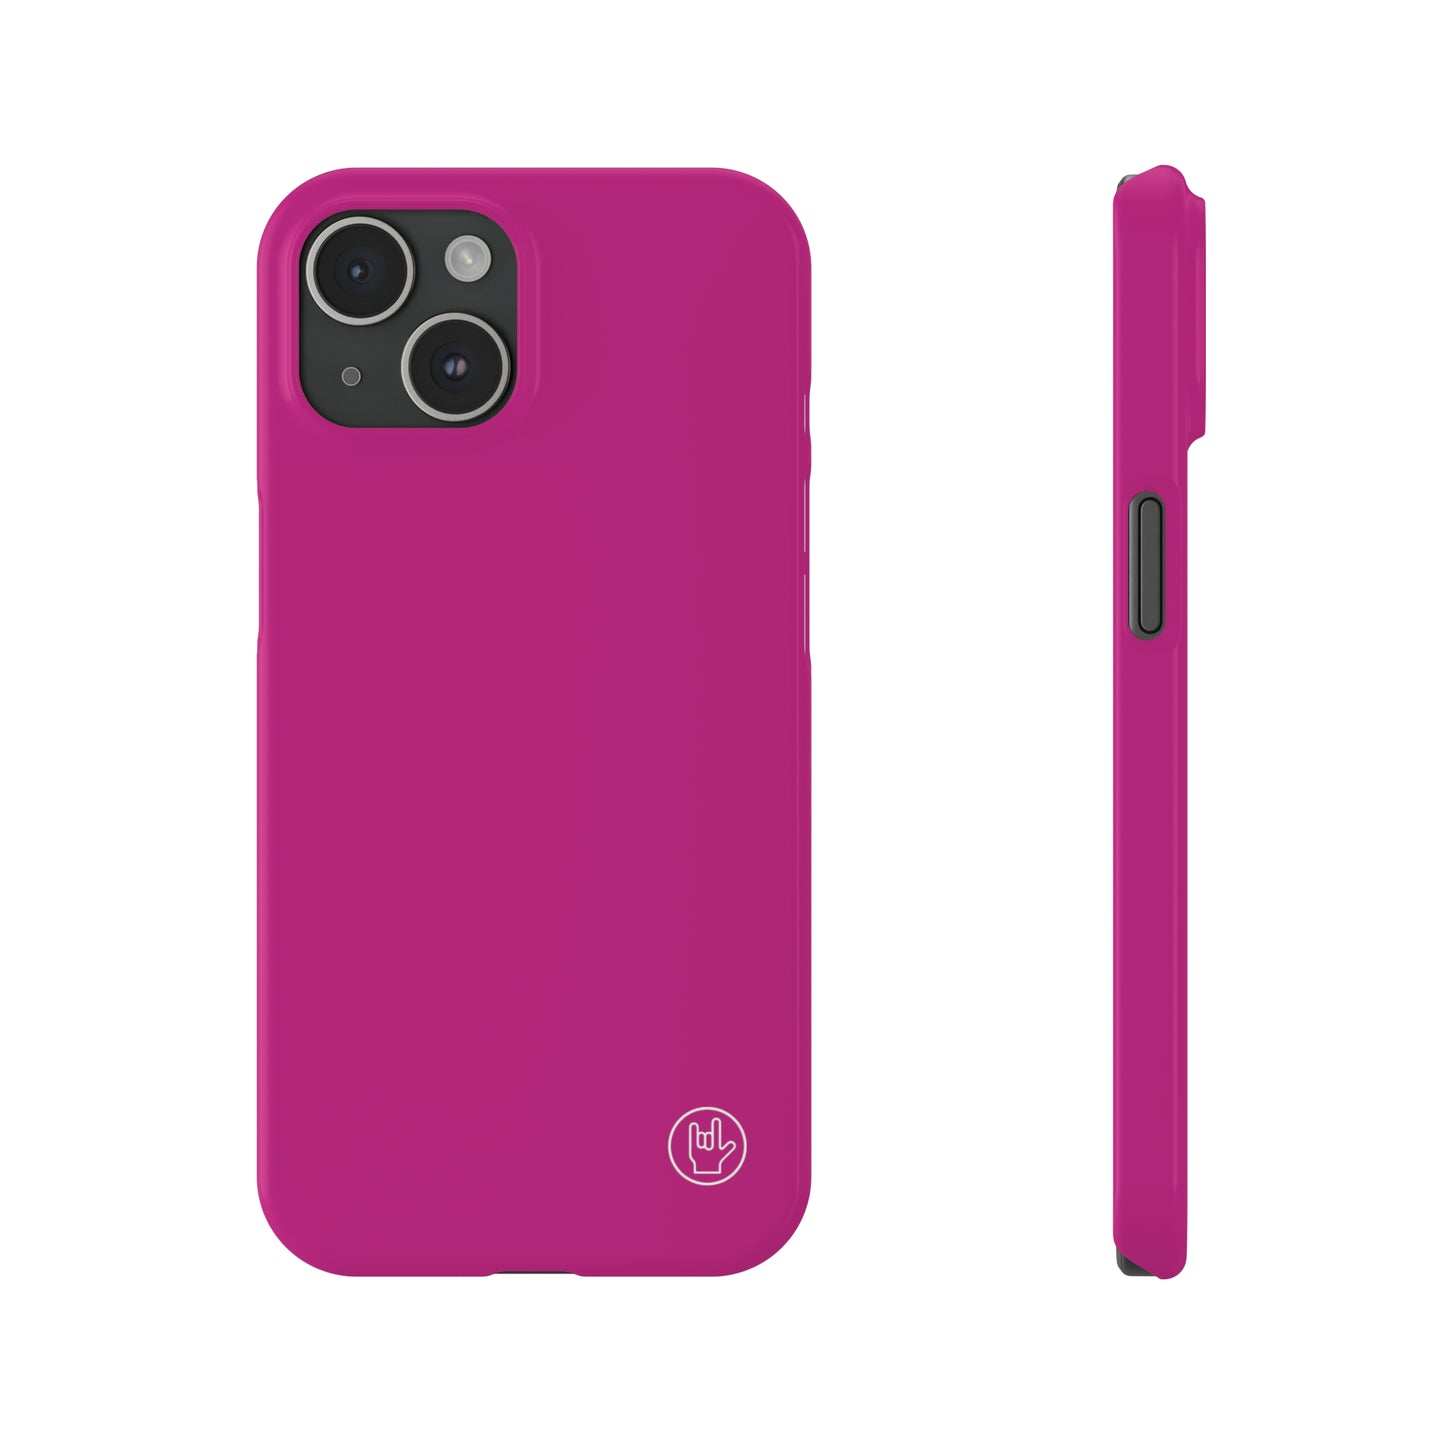 Pink Phone Case - Solid Color Phone Case - Premium Slim Phone Case